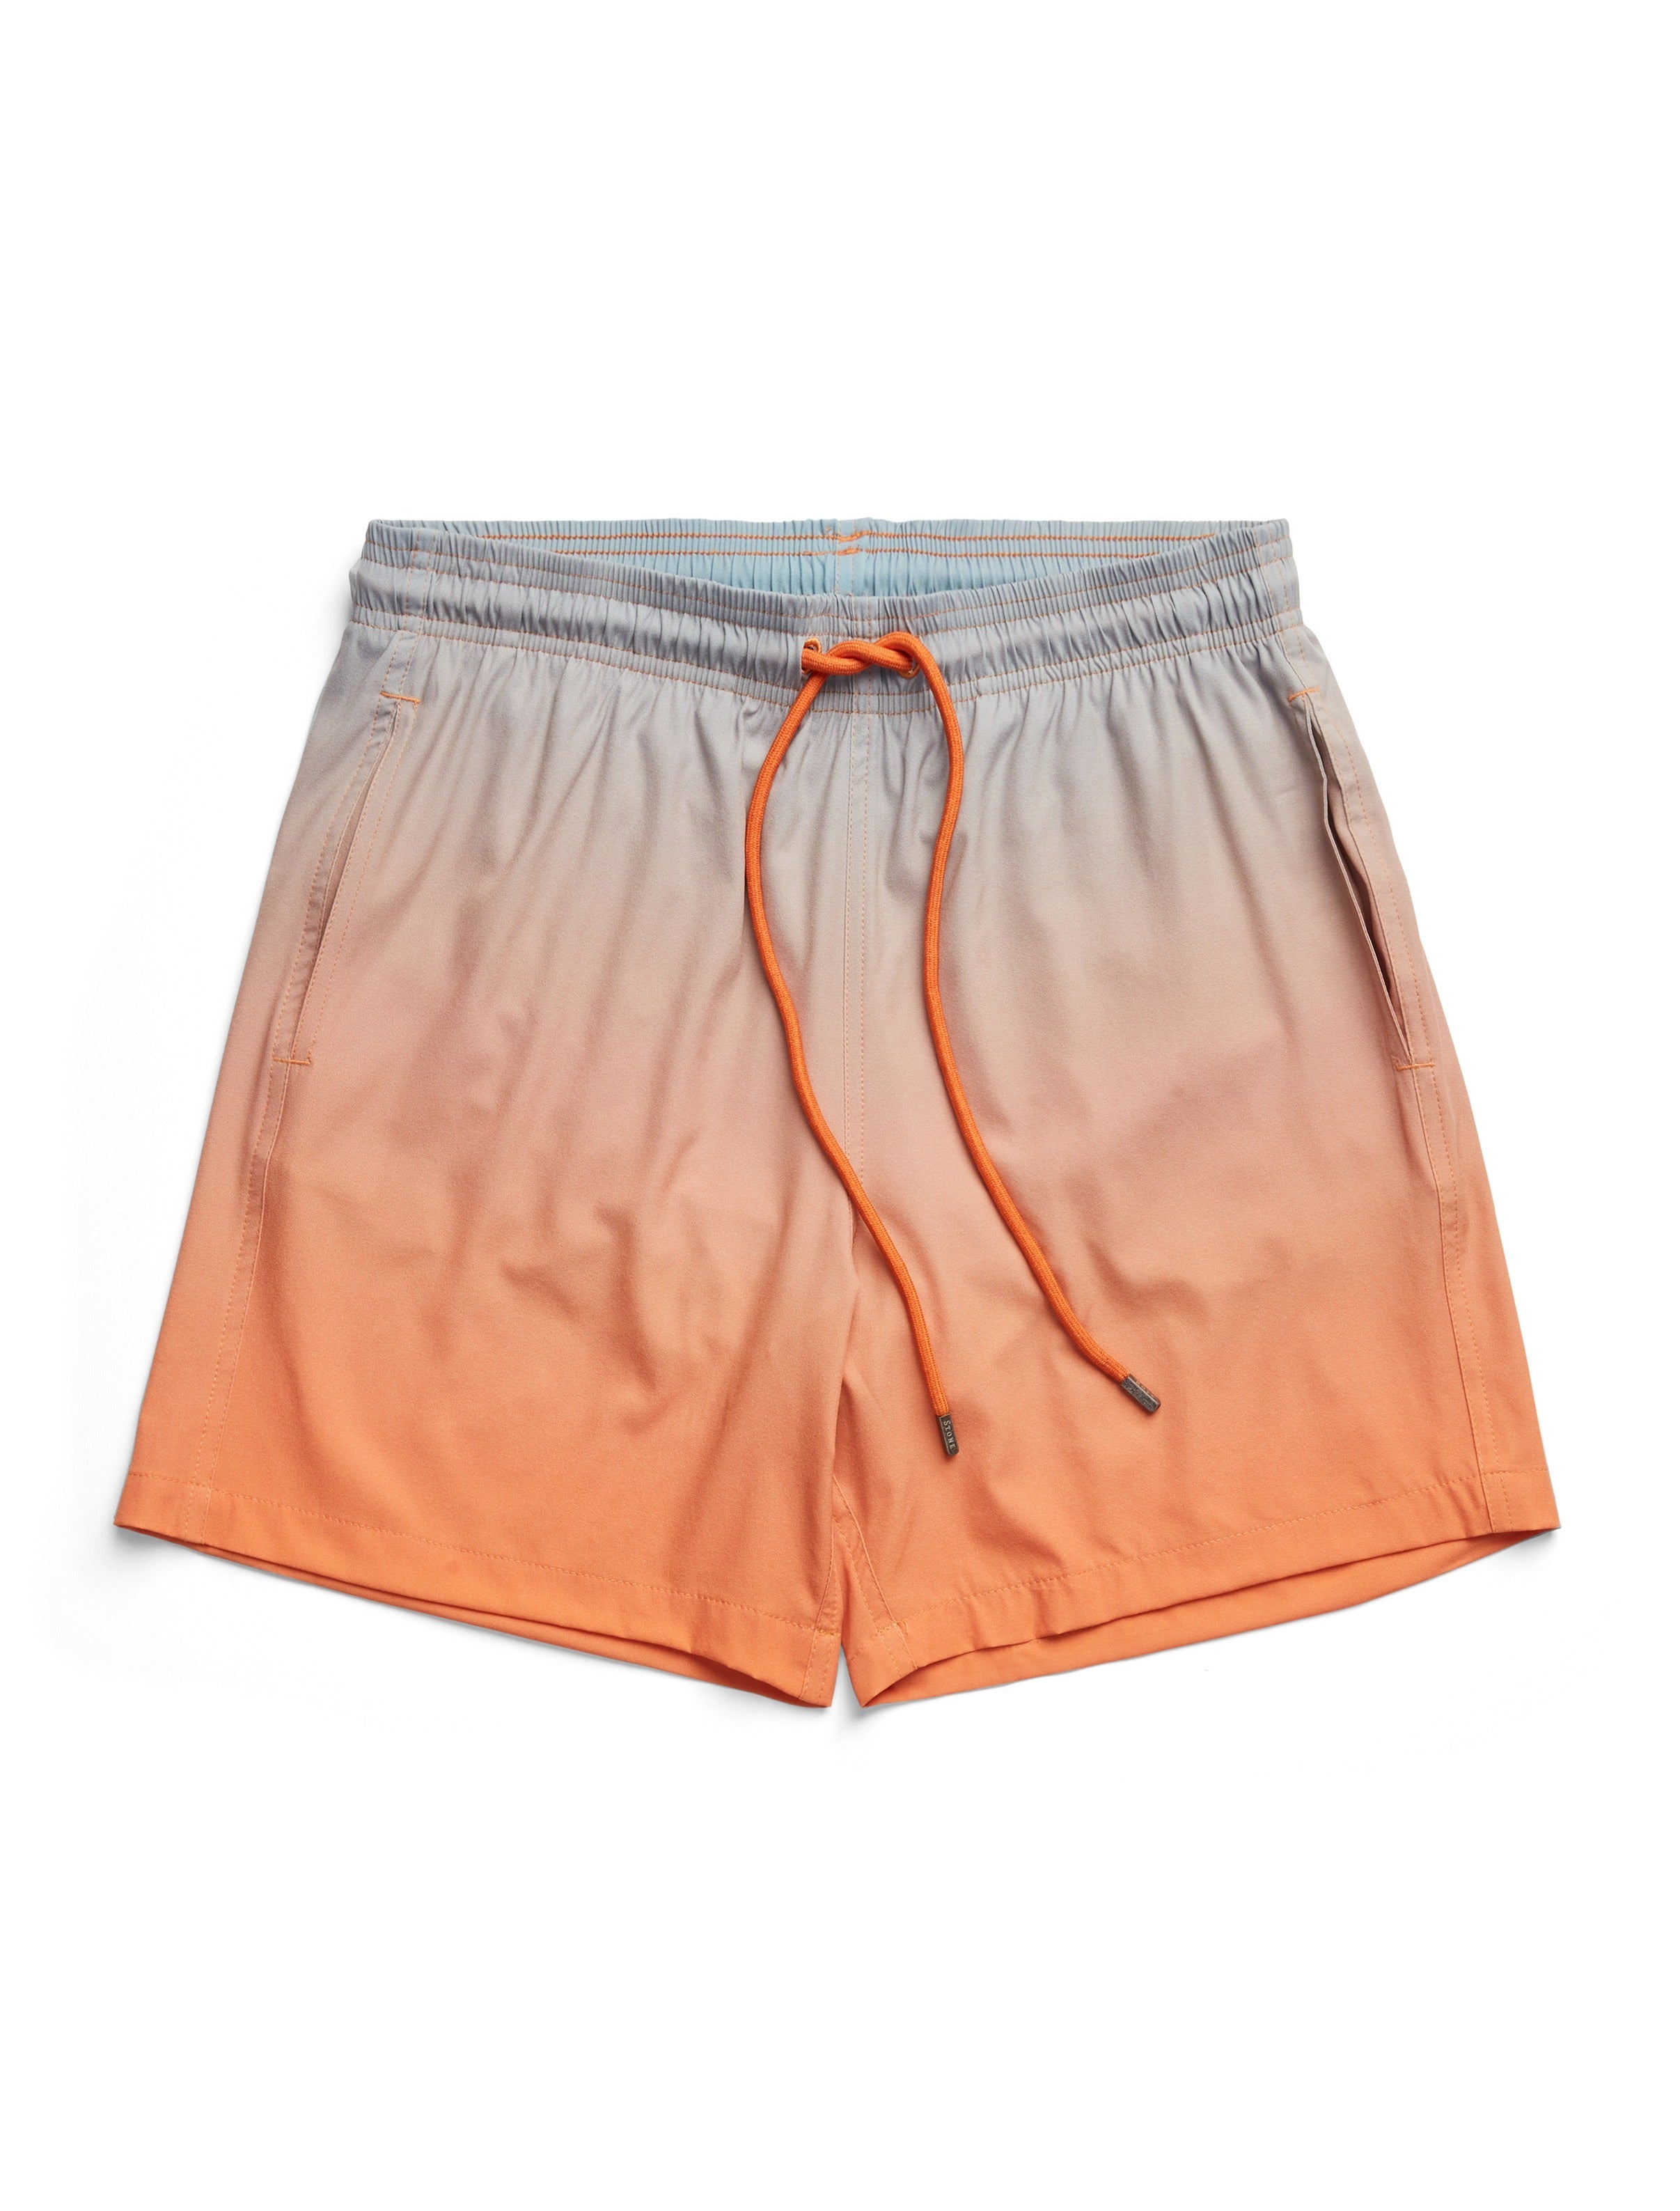 Orange Patterned Swimshort